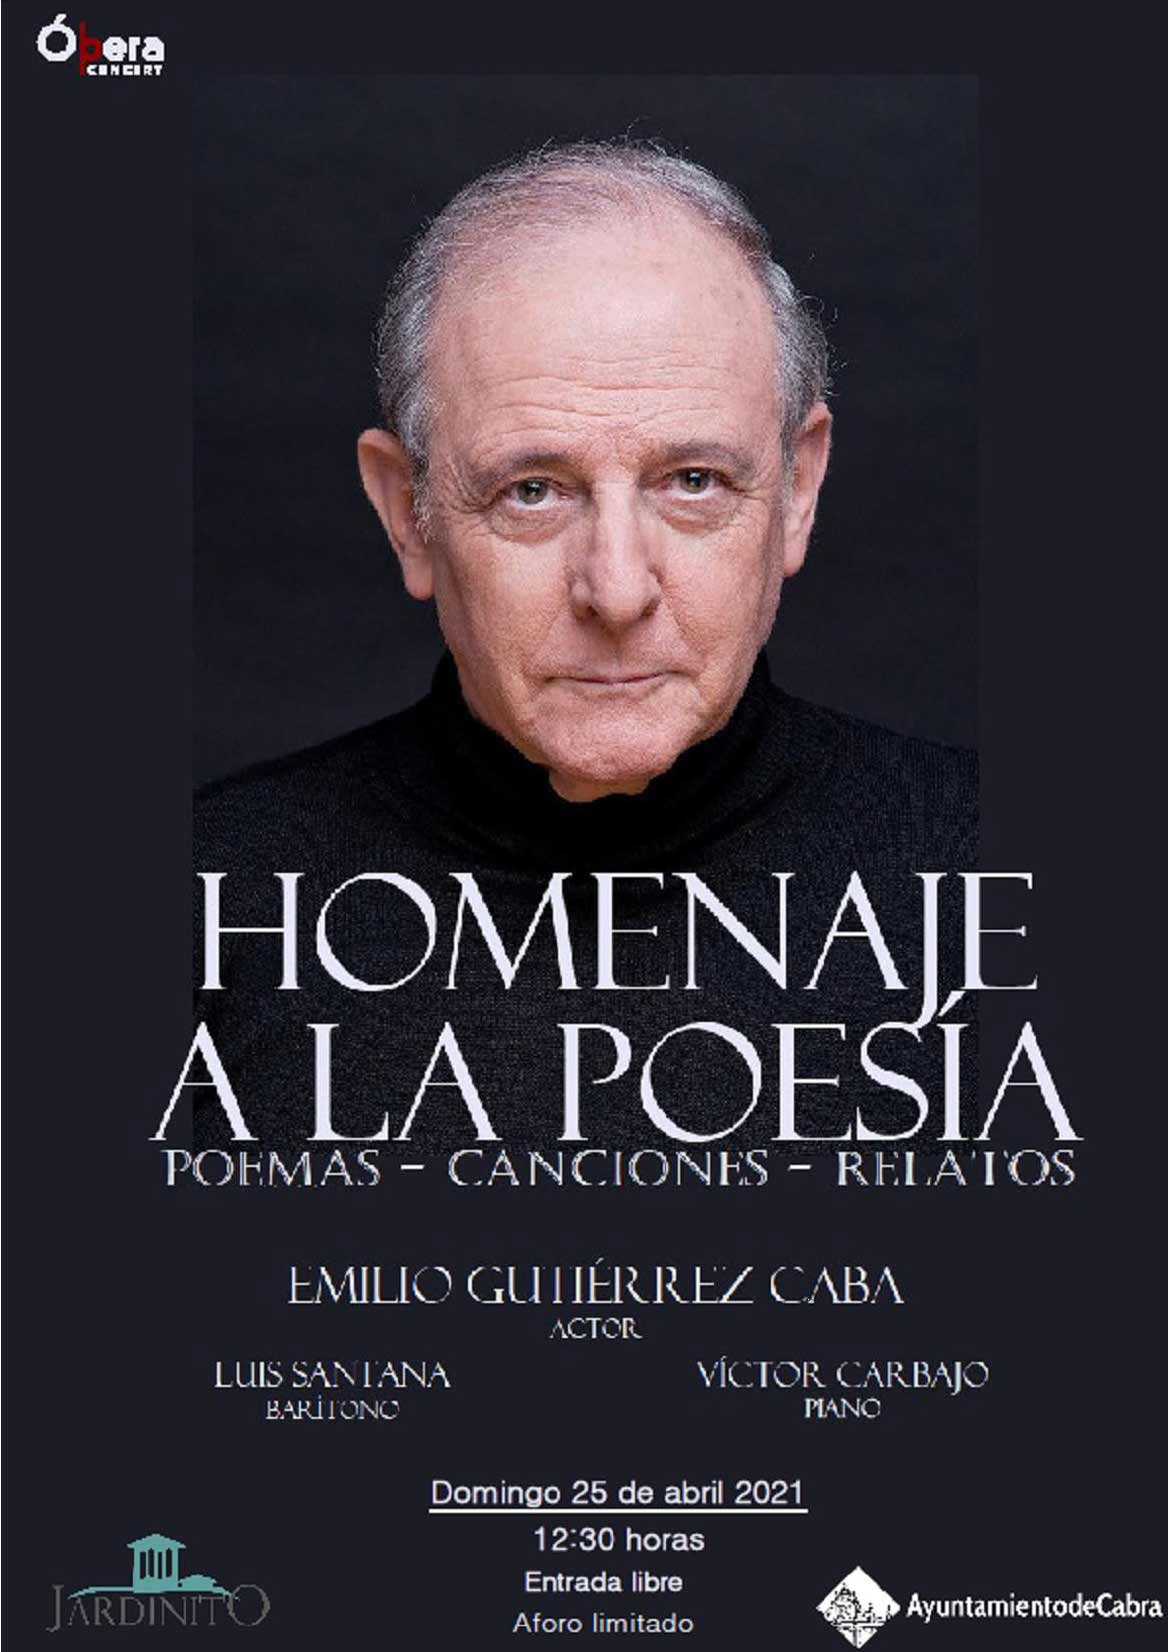 Actividades Día del Libro en Cabra 20021 «Homenaje a la poesía» con Emilio Gutierrez Caba